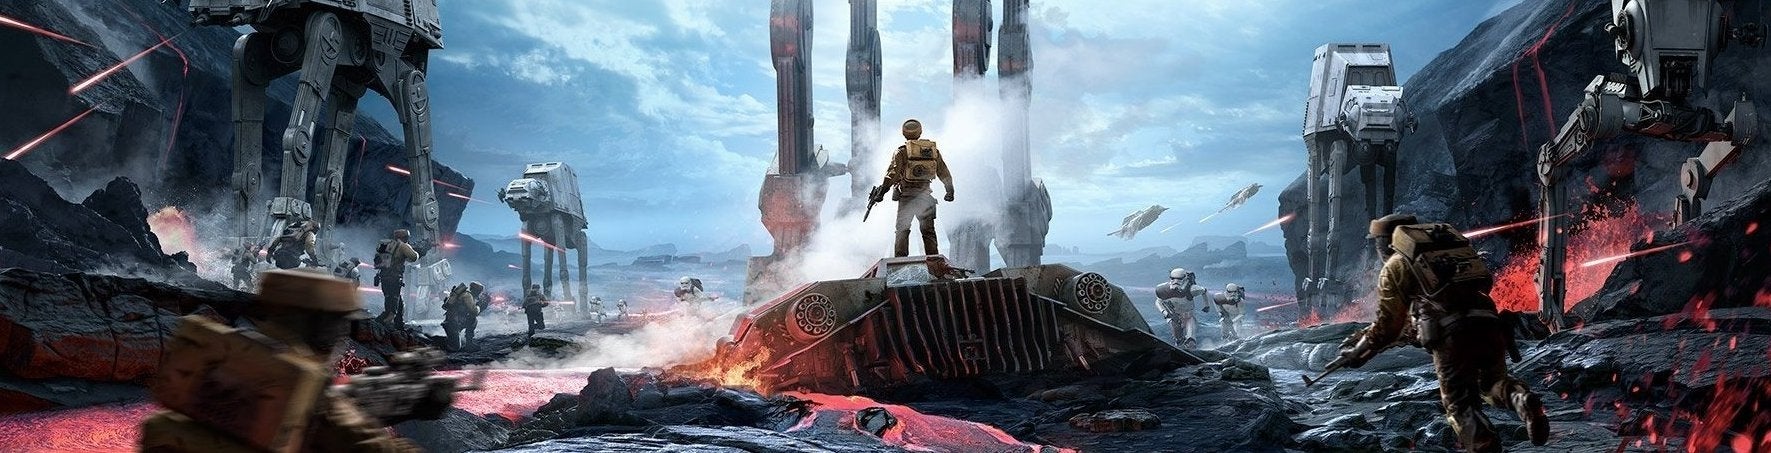 Immagine di Star Wars Battlefront beta: DICE colpisce ancora - prova